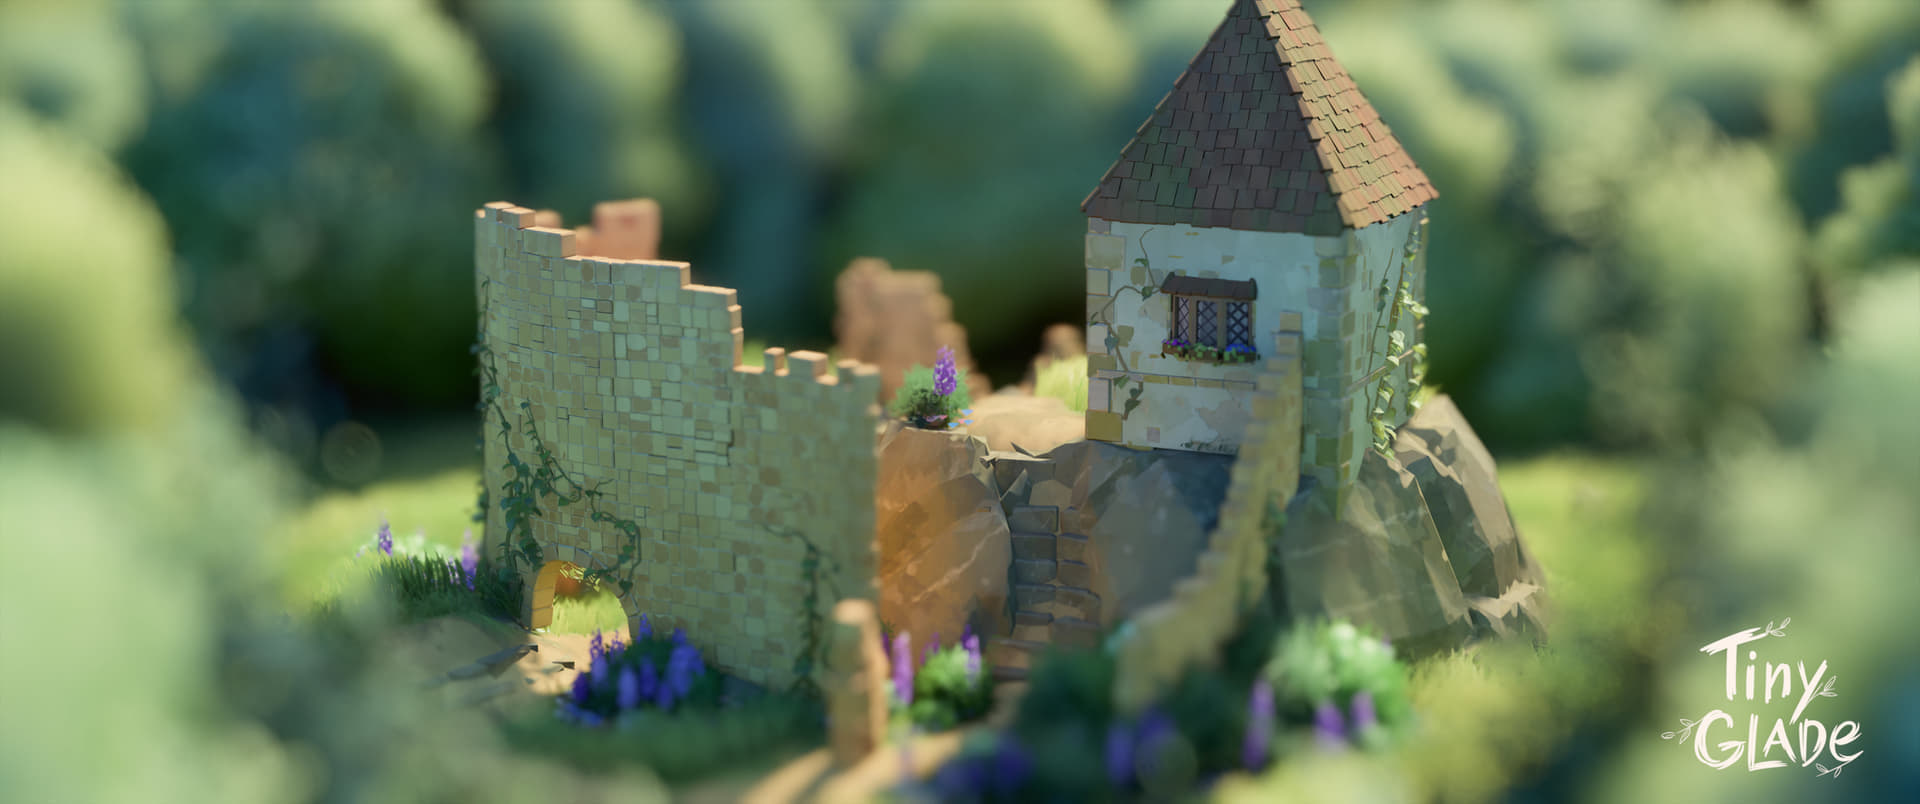 シミュレーターゲーム『Tiny Glade』の体験版が配信。思うがままのお城を建築できる_005